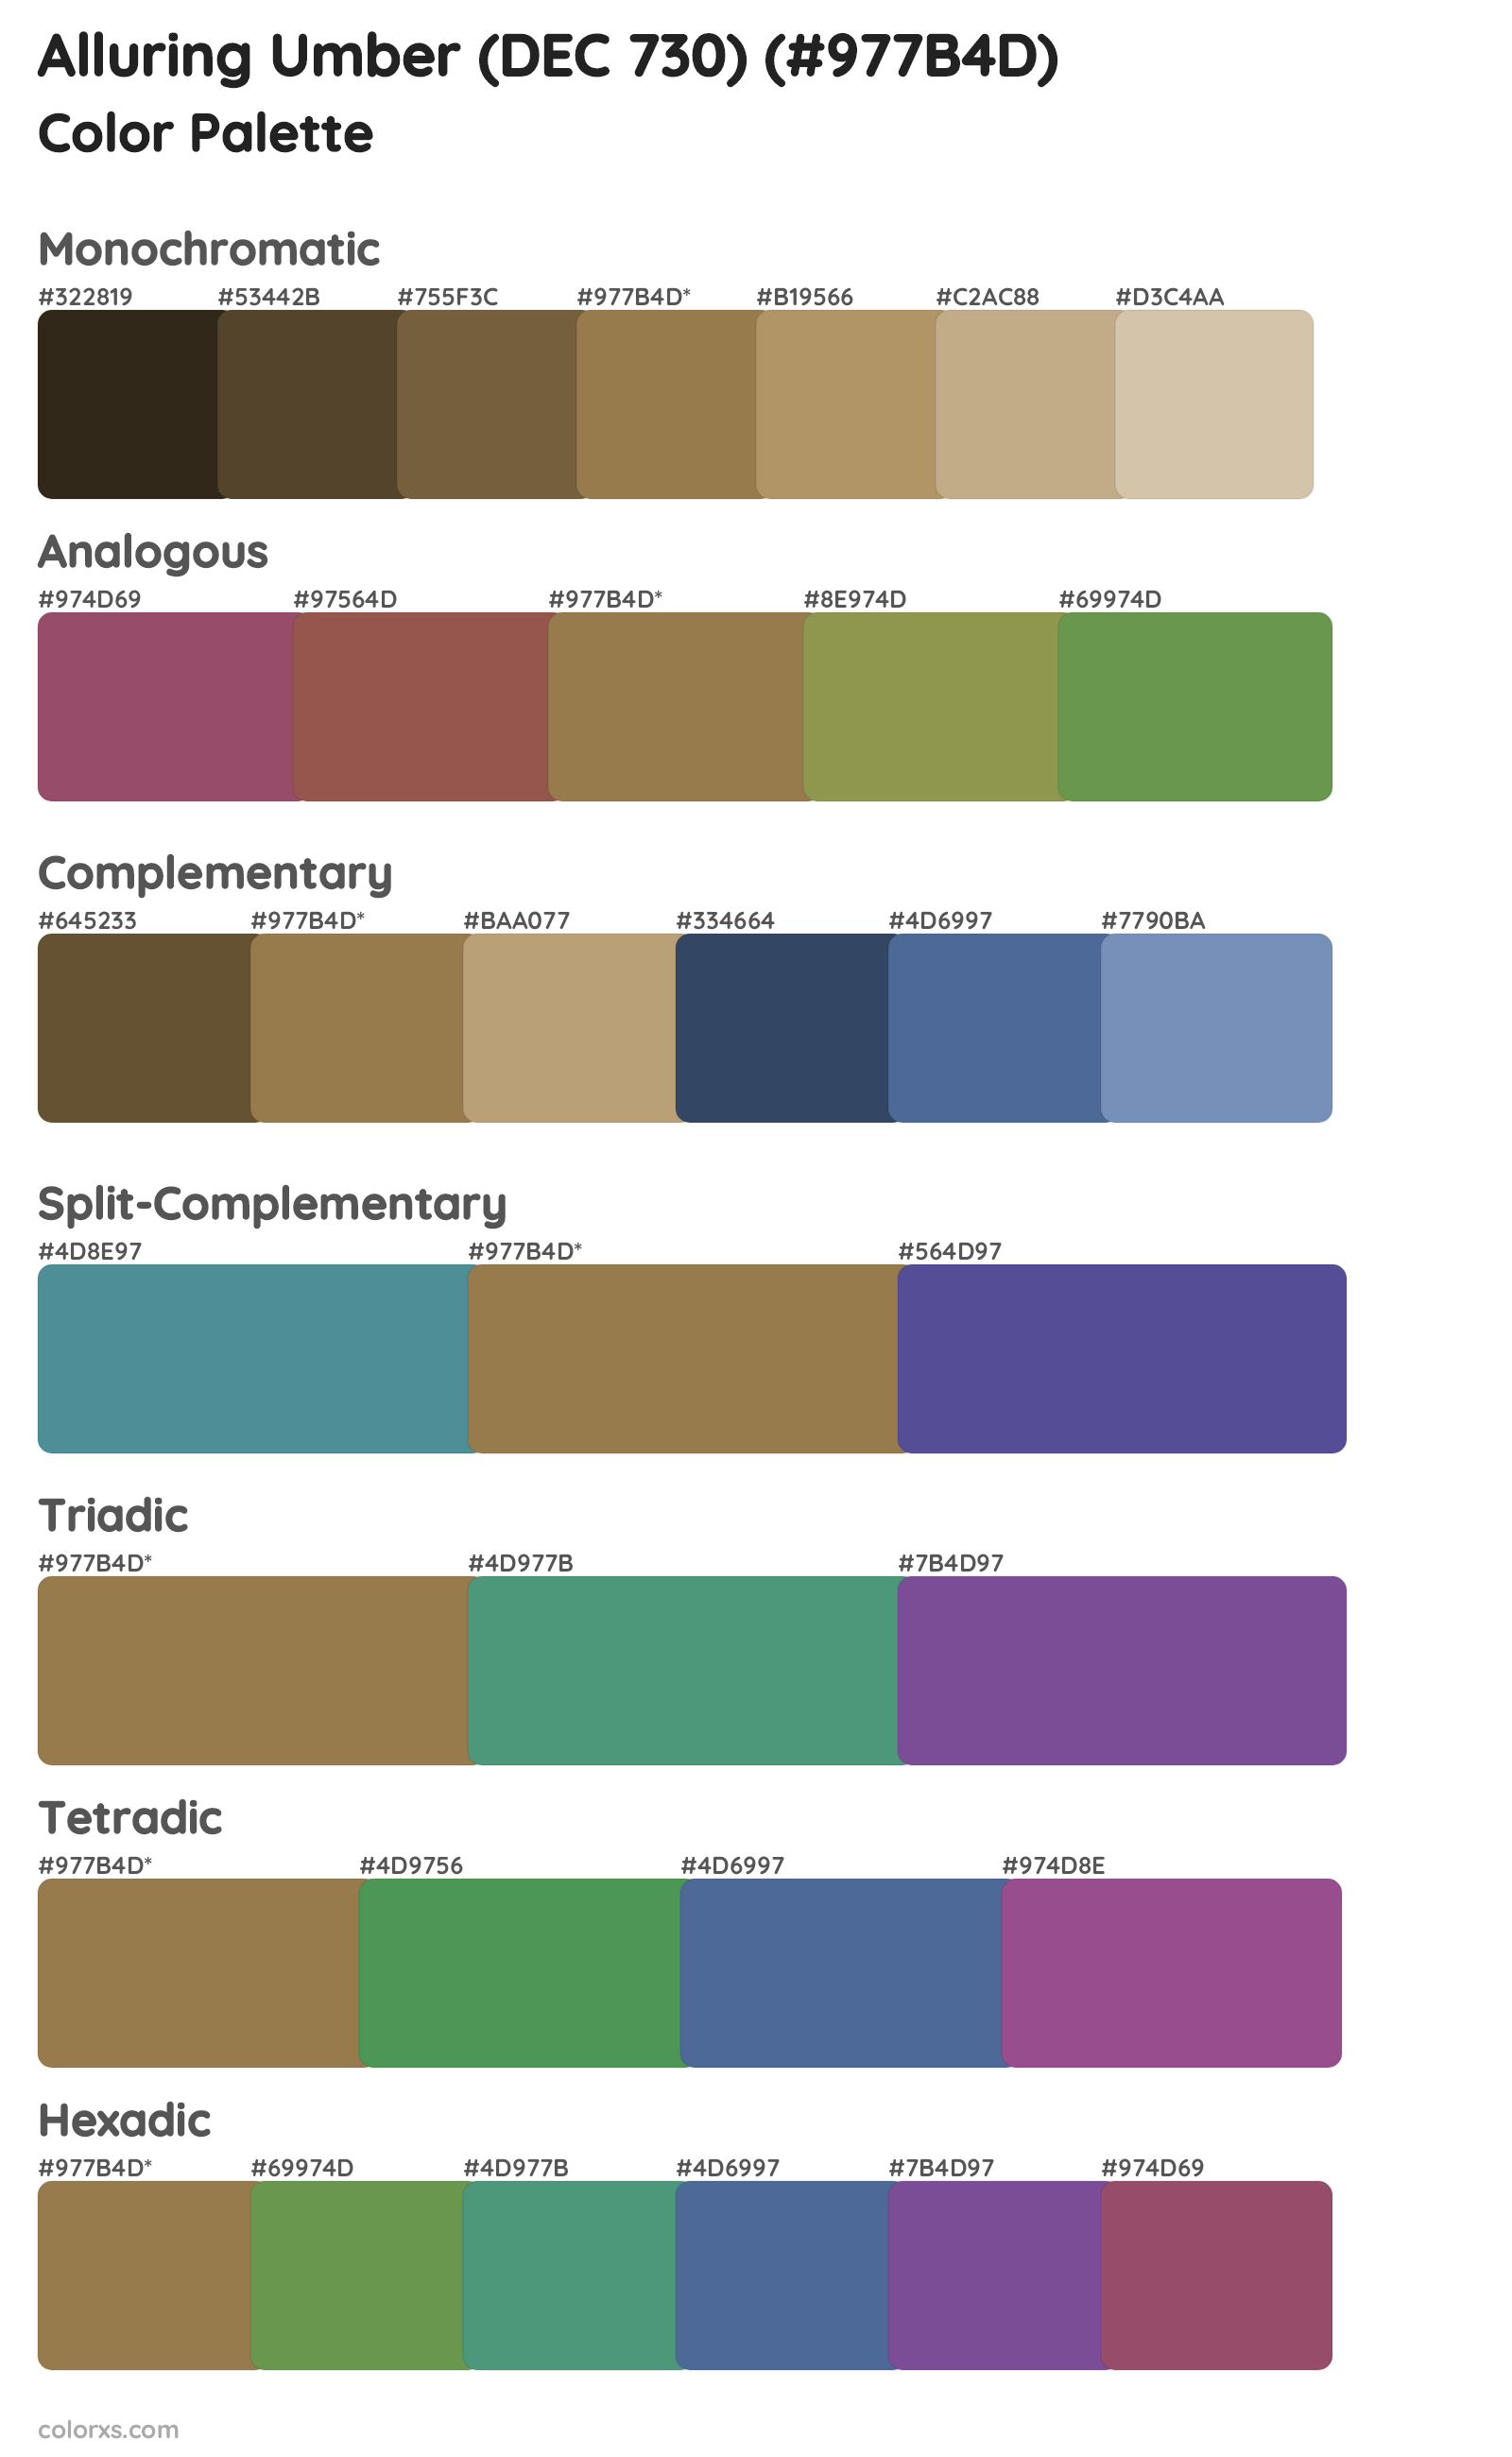 Alluring Umber (DEC 730) Color Scheme Palettes